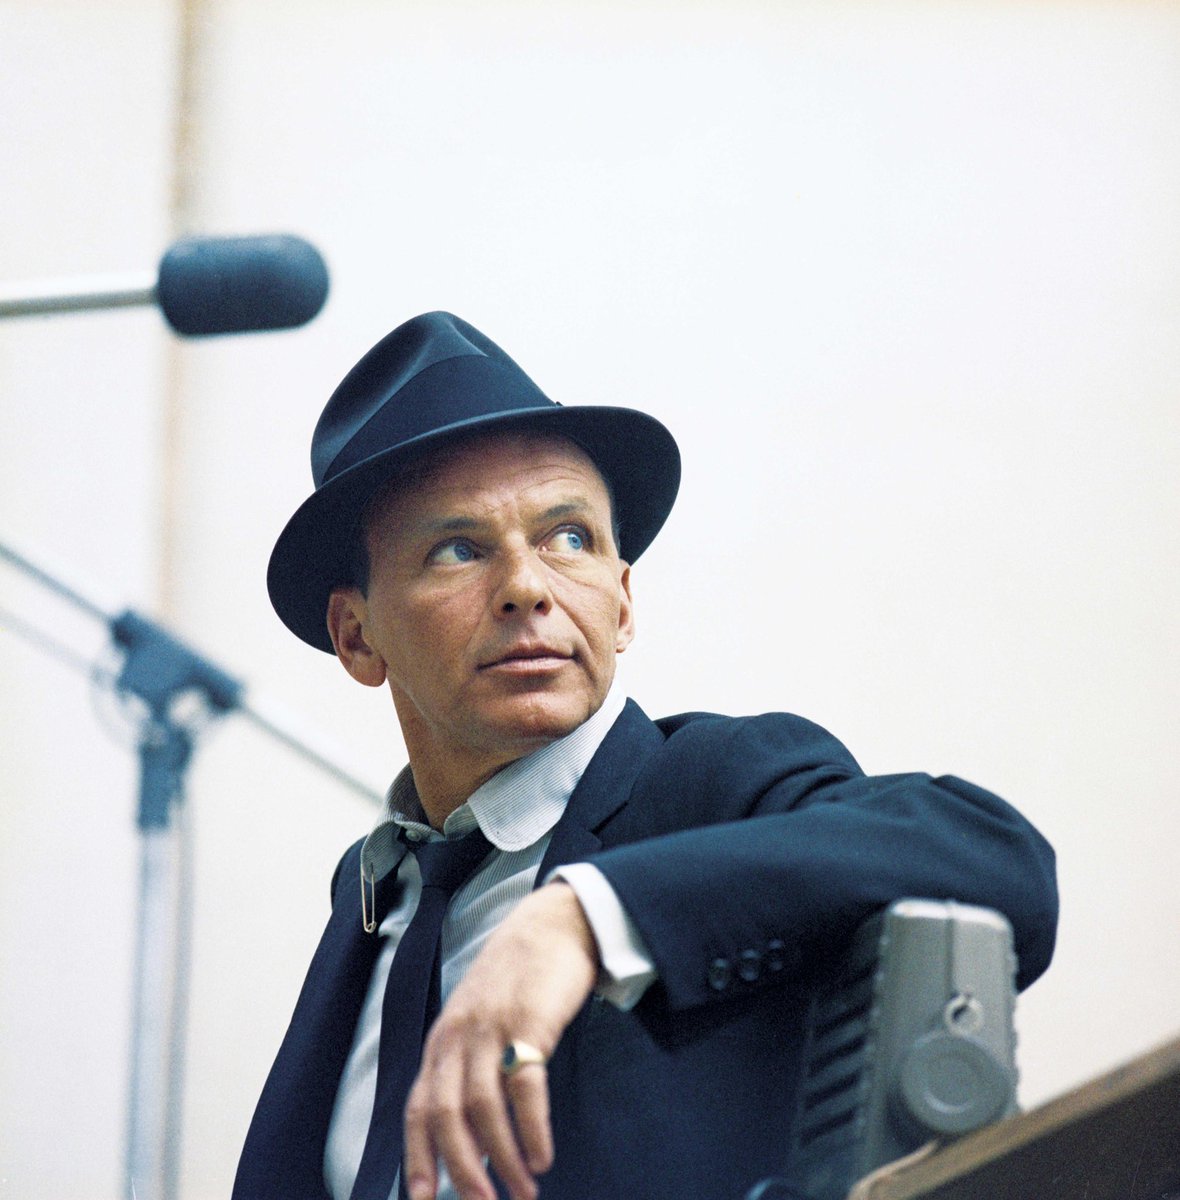 Se cumplen 26 años sin Frank Sinatra 🕊️

El 14 de mayo de 1998 fallecía Frank Sinatra en Los Ángeles, California (Estados Unidos)

Frank Sinatra fue y es considerado uno de los artistas más influyentes en la historia de la música